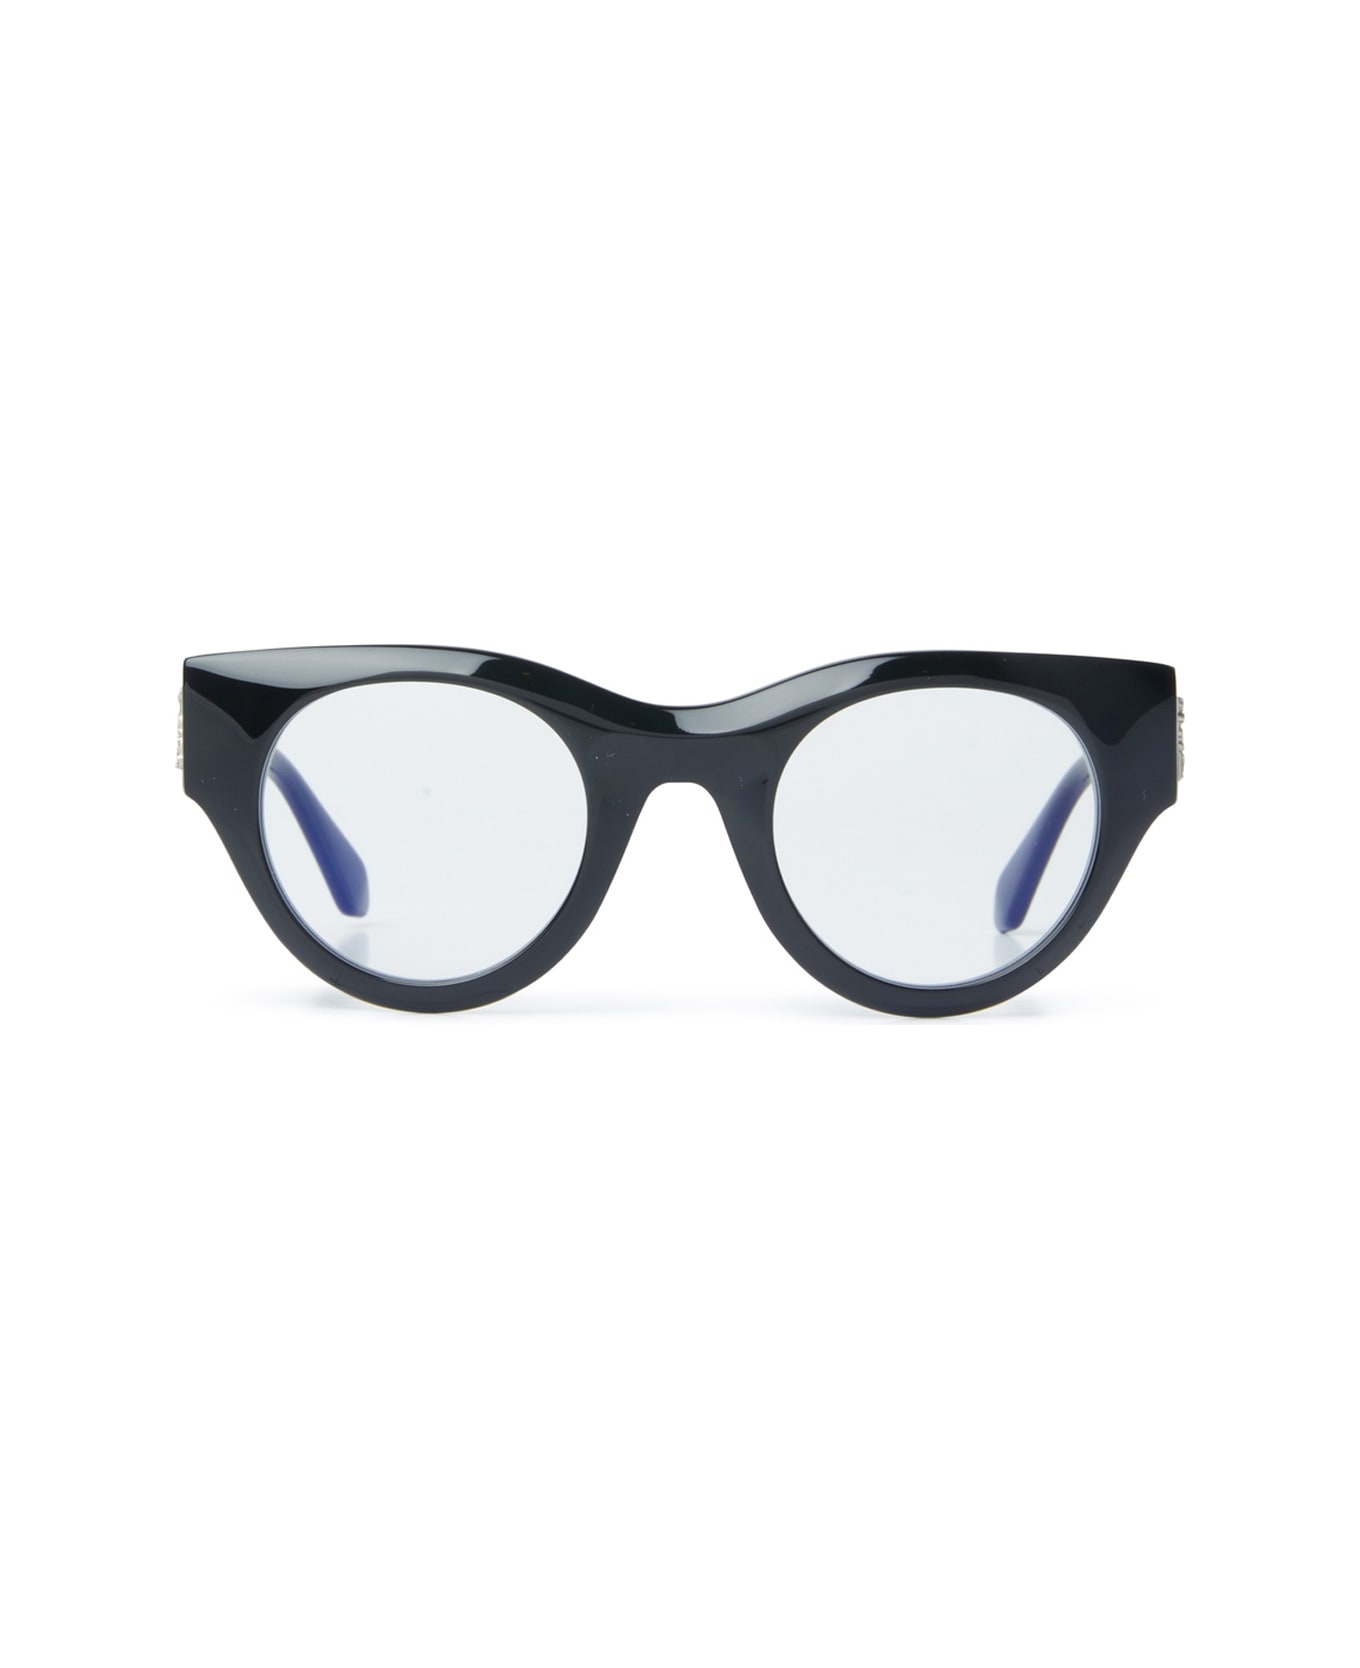 Off-White Optical Style 13 Glasses - Nero アイウェア